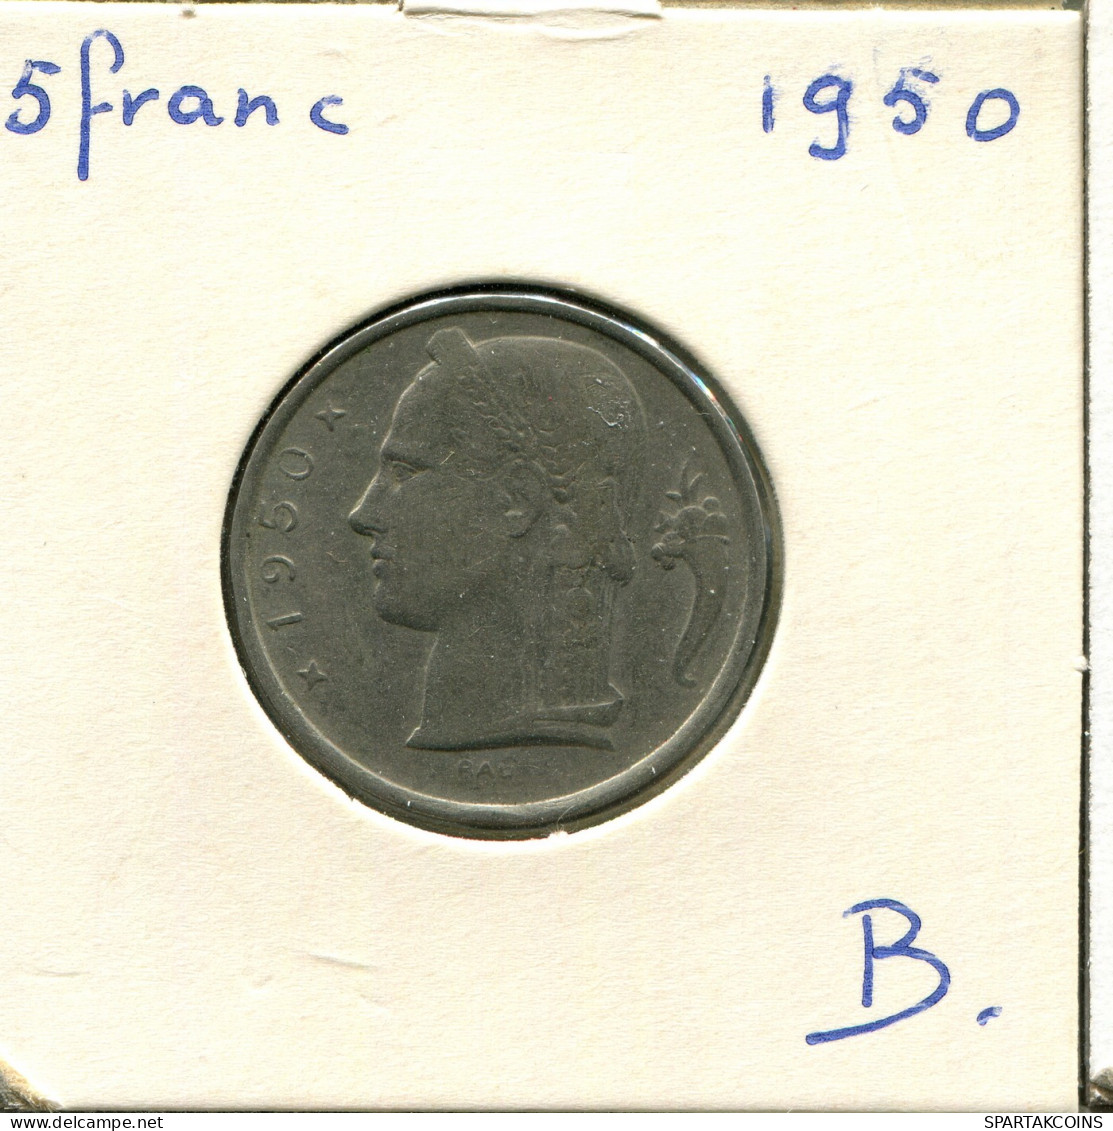 5 FRANCS 1950 DUTCH Text BELGIUM Coin #AW878.U - 5 Francs